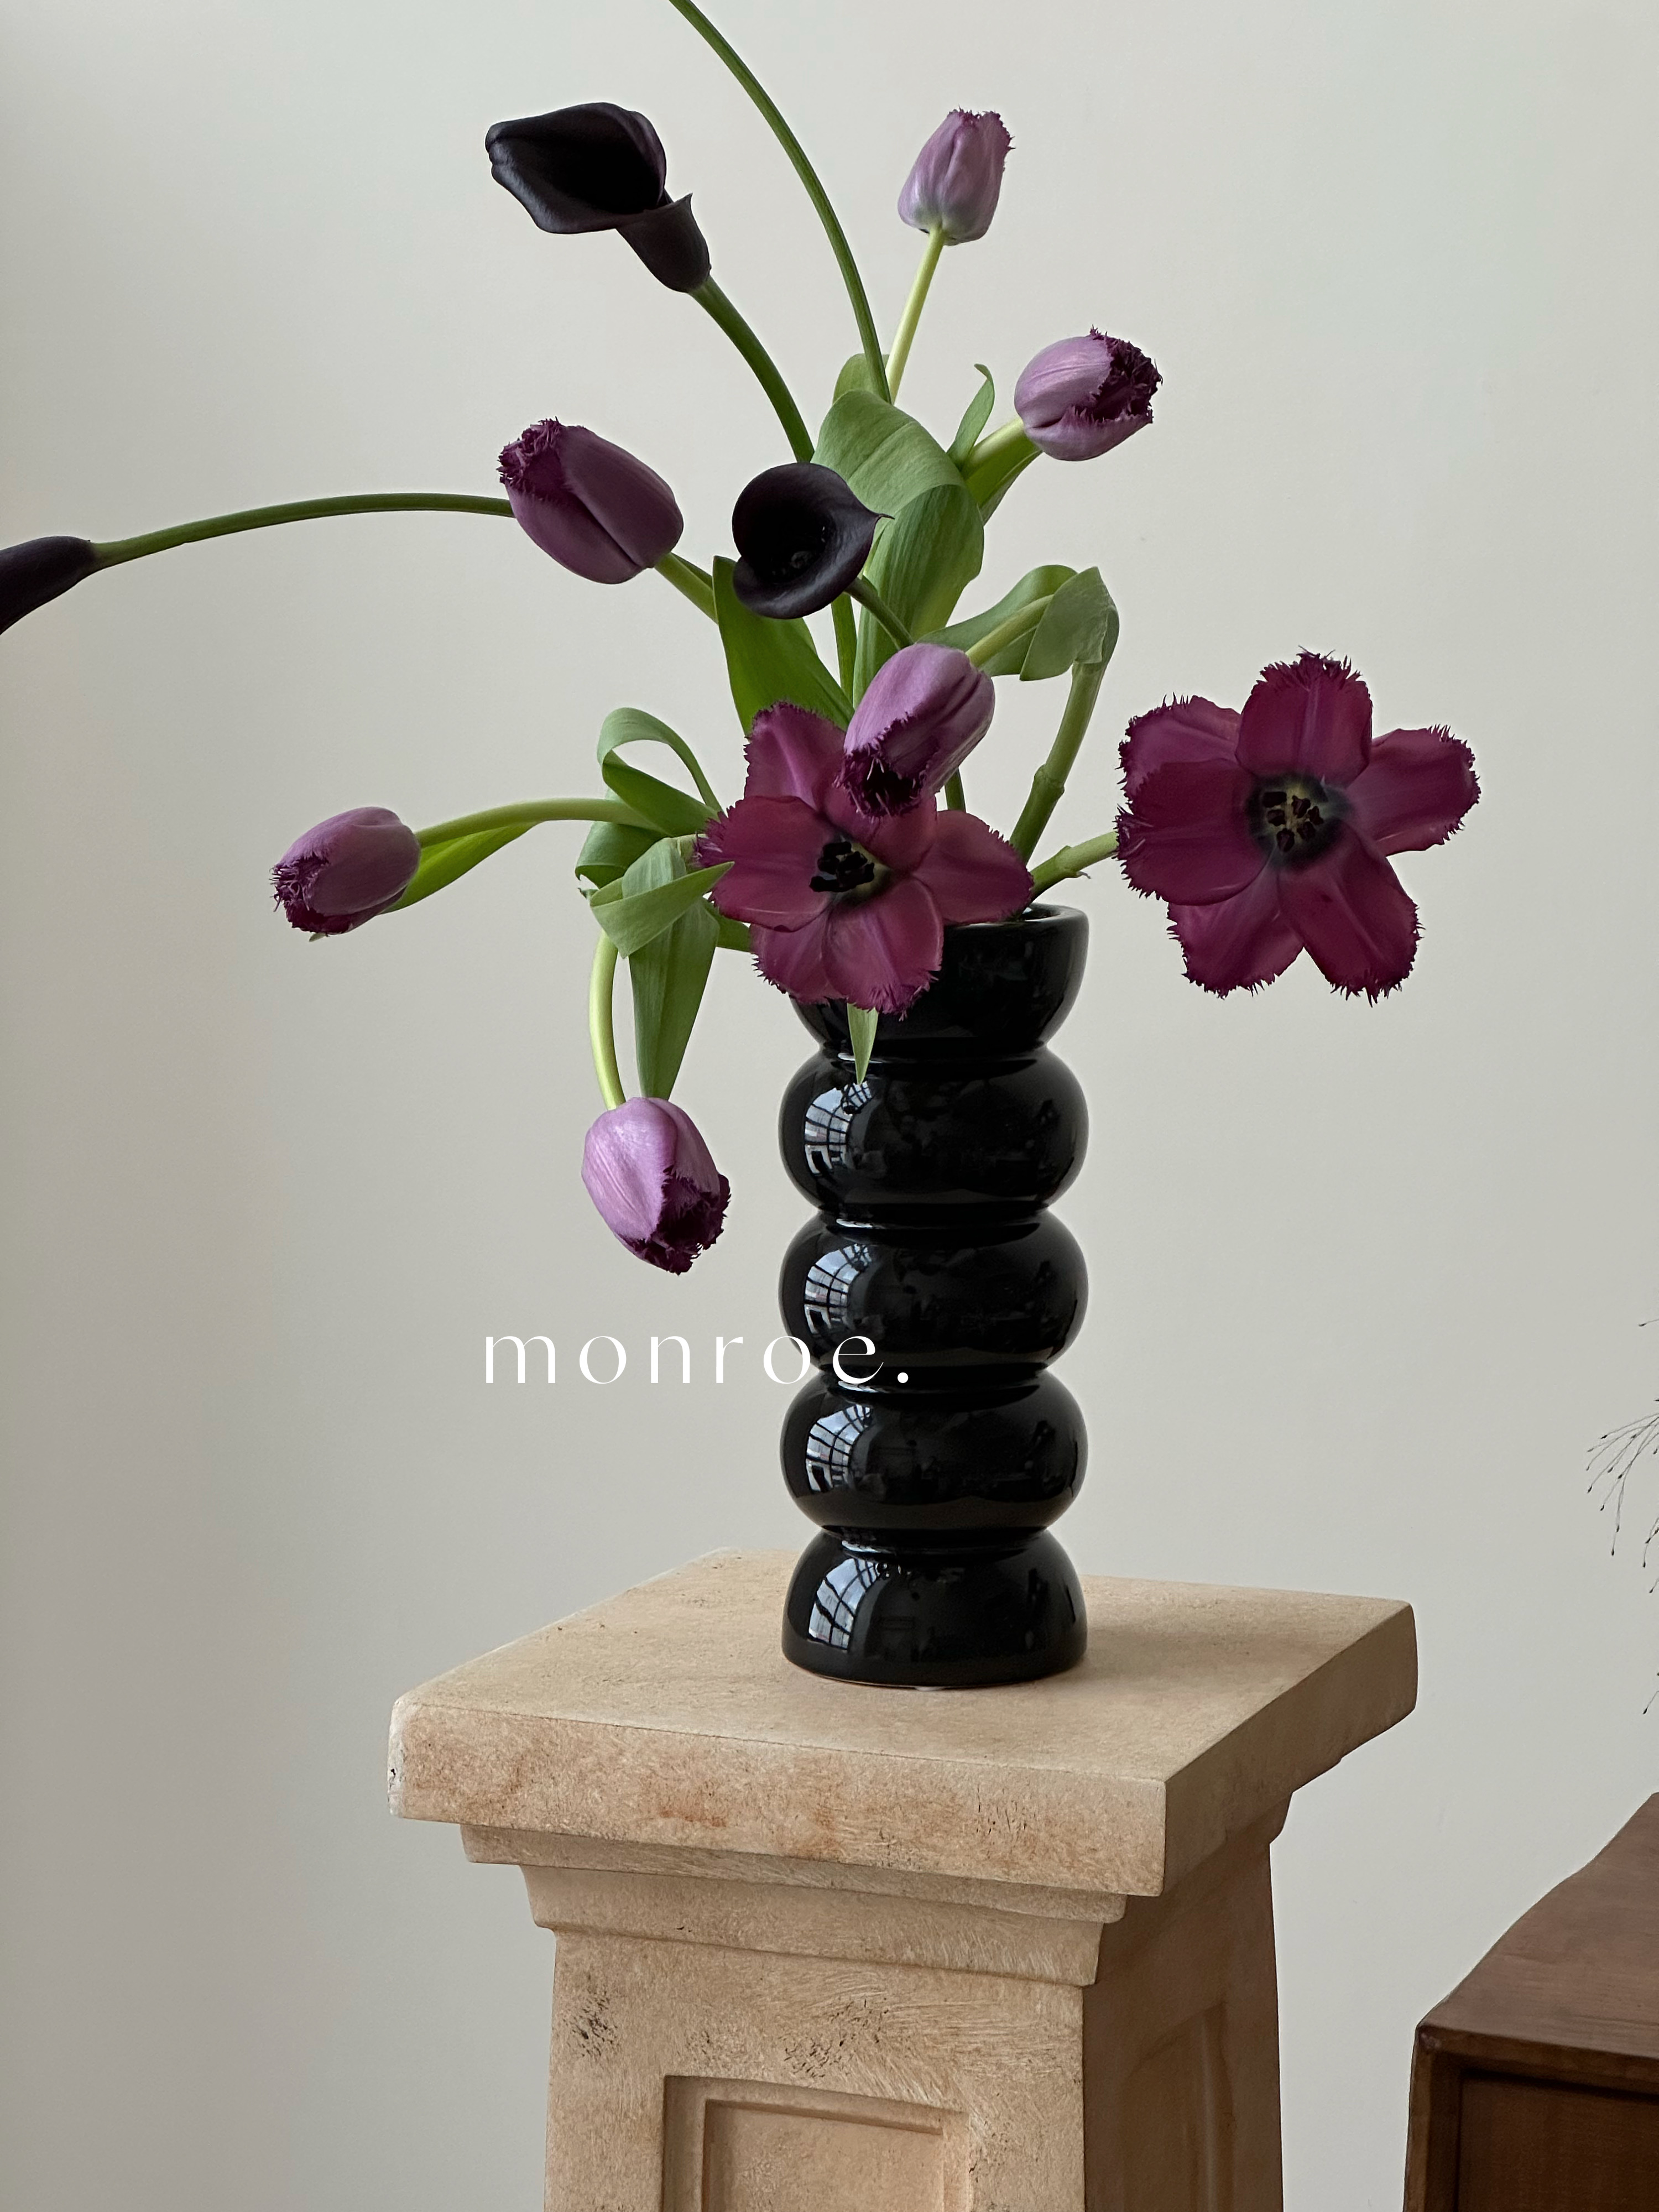 簡約現代黑色直筒玻璃花瓶搭配仿真冬青花藝裝飾家居桌面擺件增添自然氣息